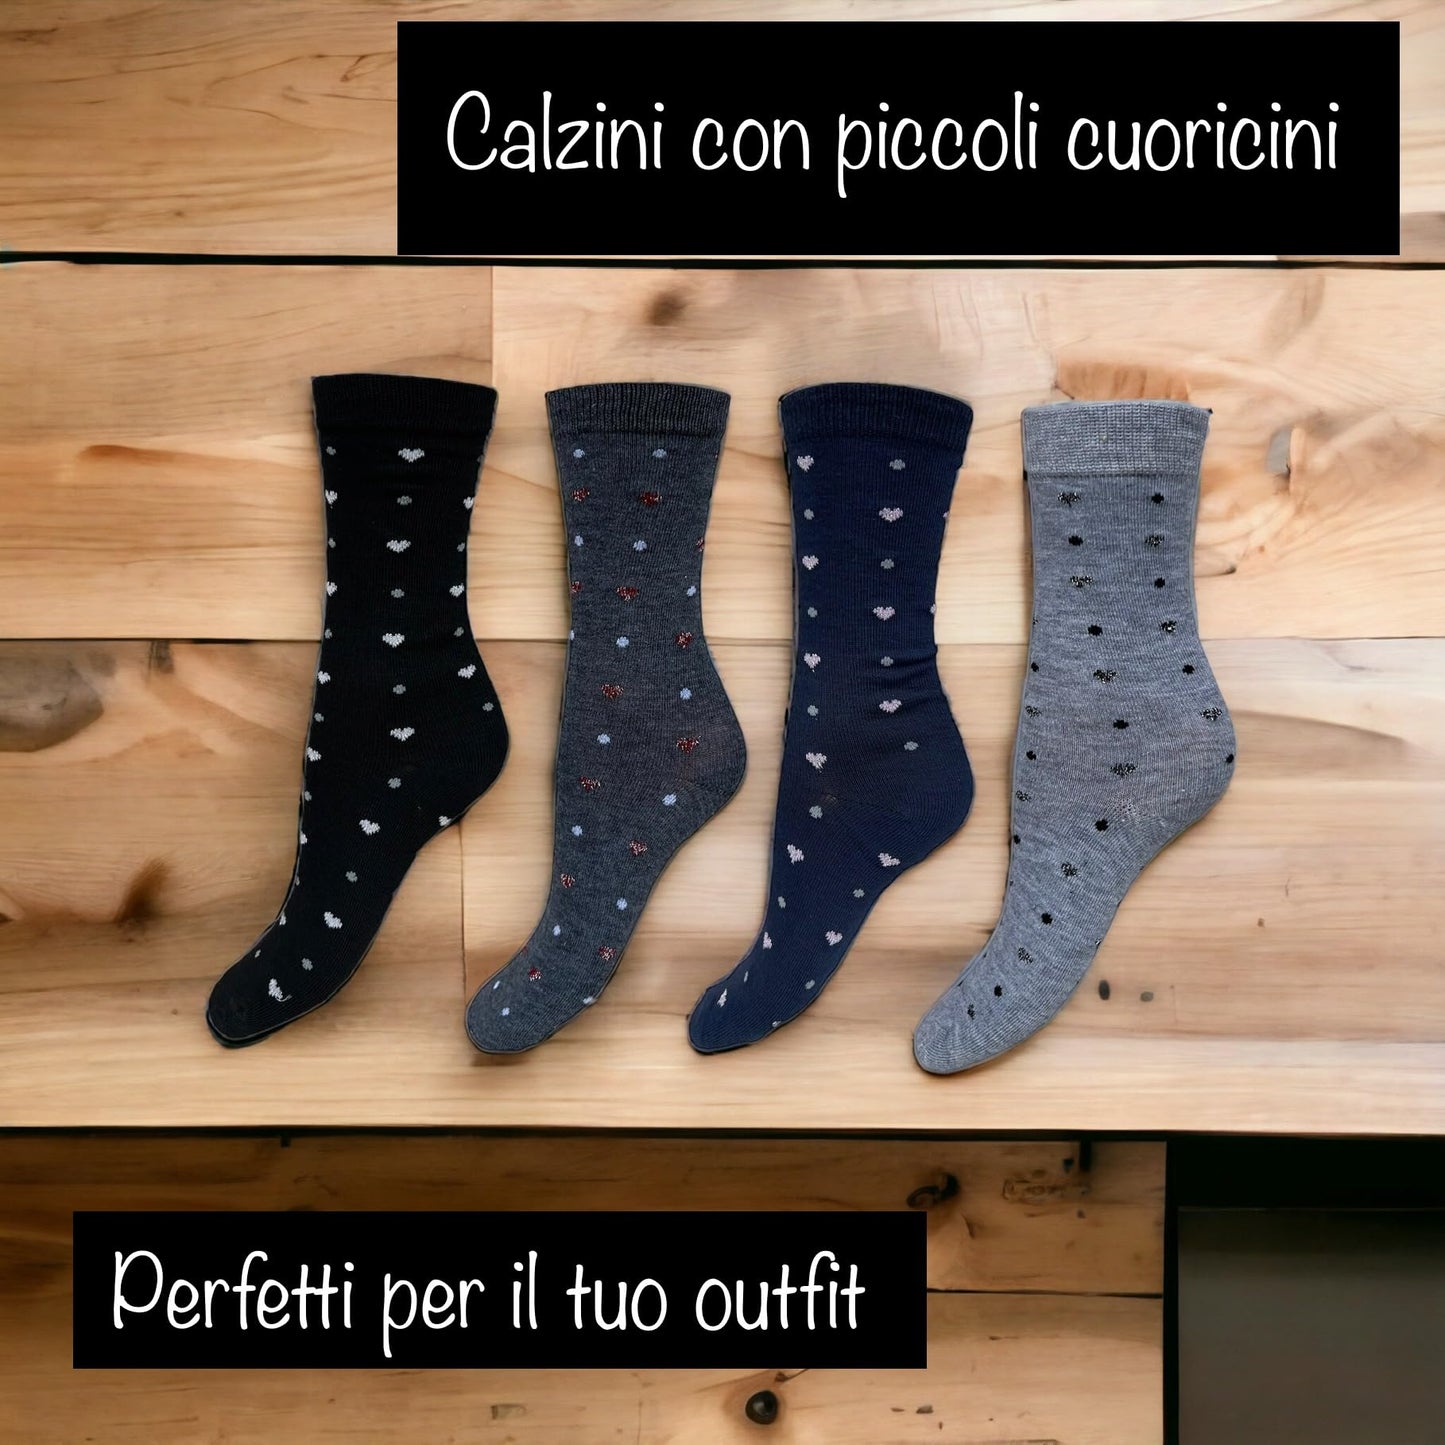 Lucchetti Socks Milano Calze donna corte caldo cotone fantasia colorate a Pois, Righe, Fantasia con disegni invernali made in Italy 4 PAIA